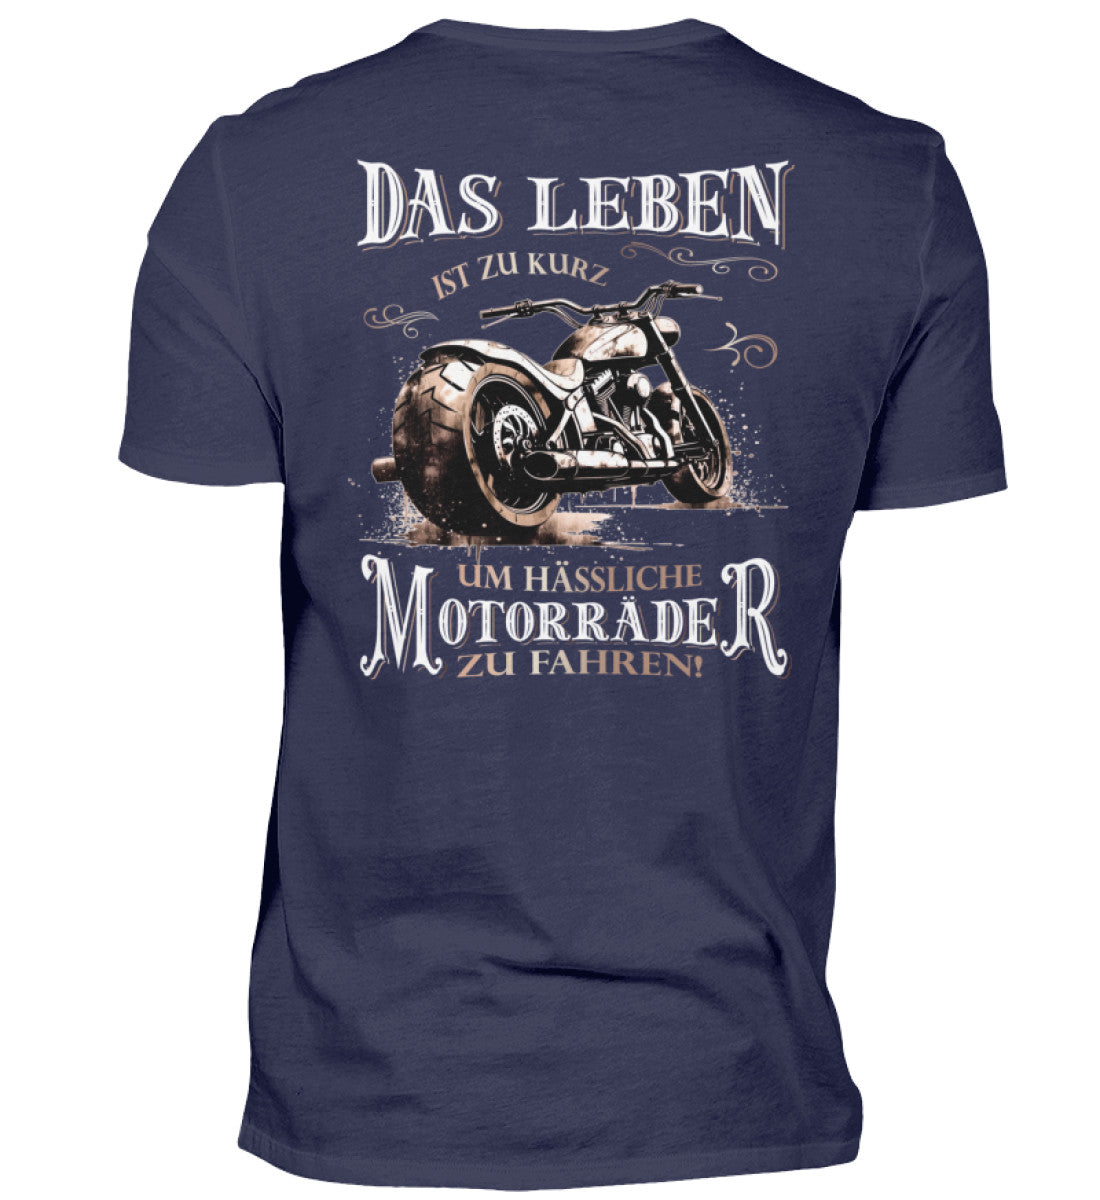 Ein Biker T-Shirt für Motorradfahrer von Wingbikers mit dem Aufdruck, Das Leben ist zu kurz, um hässliche Motorräder zu fahren - mit Back Print, in navy blau.